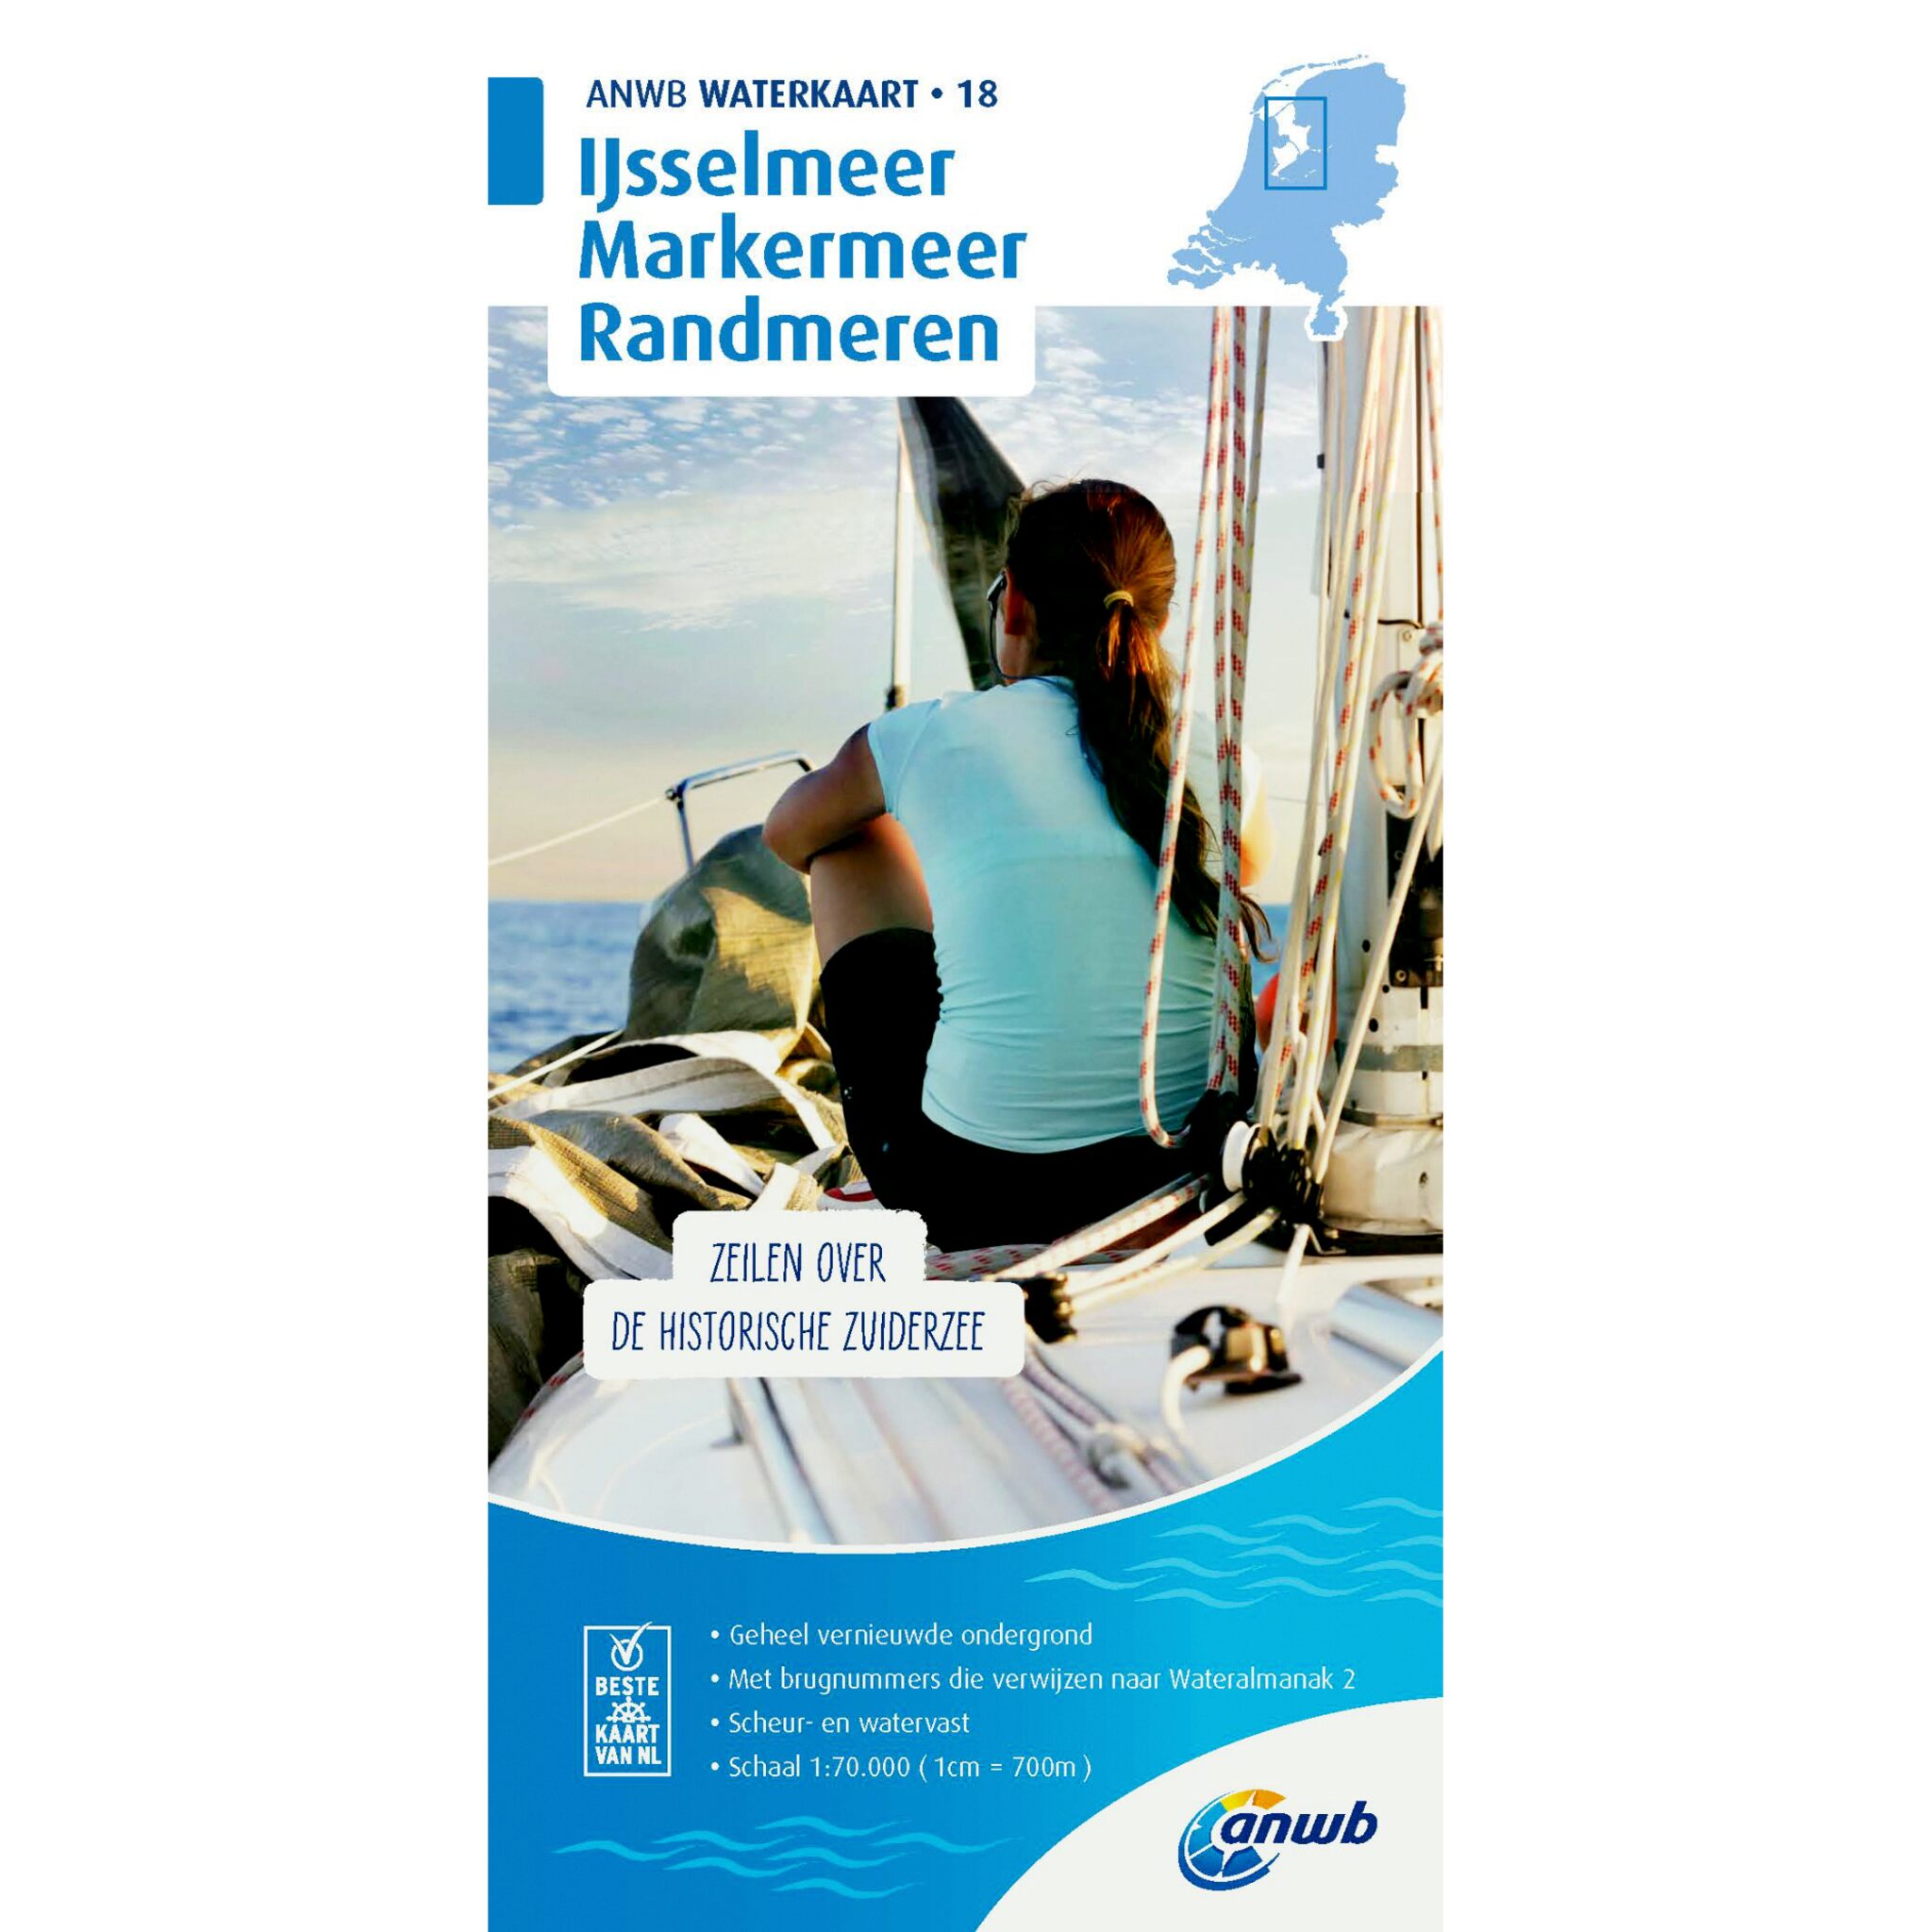 Waterkaart 18 Ijsselmeer-Markermeer/Randmeren 2019